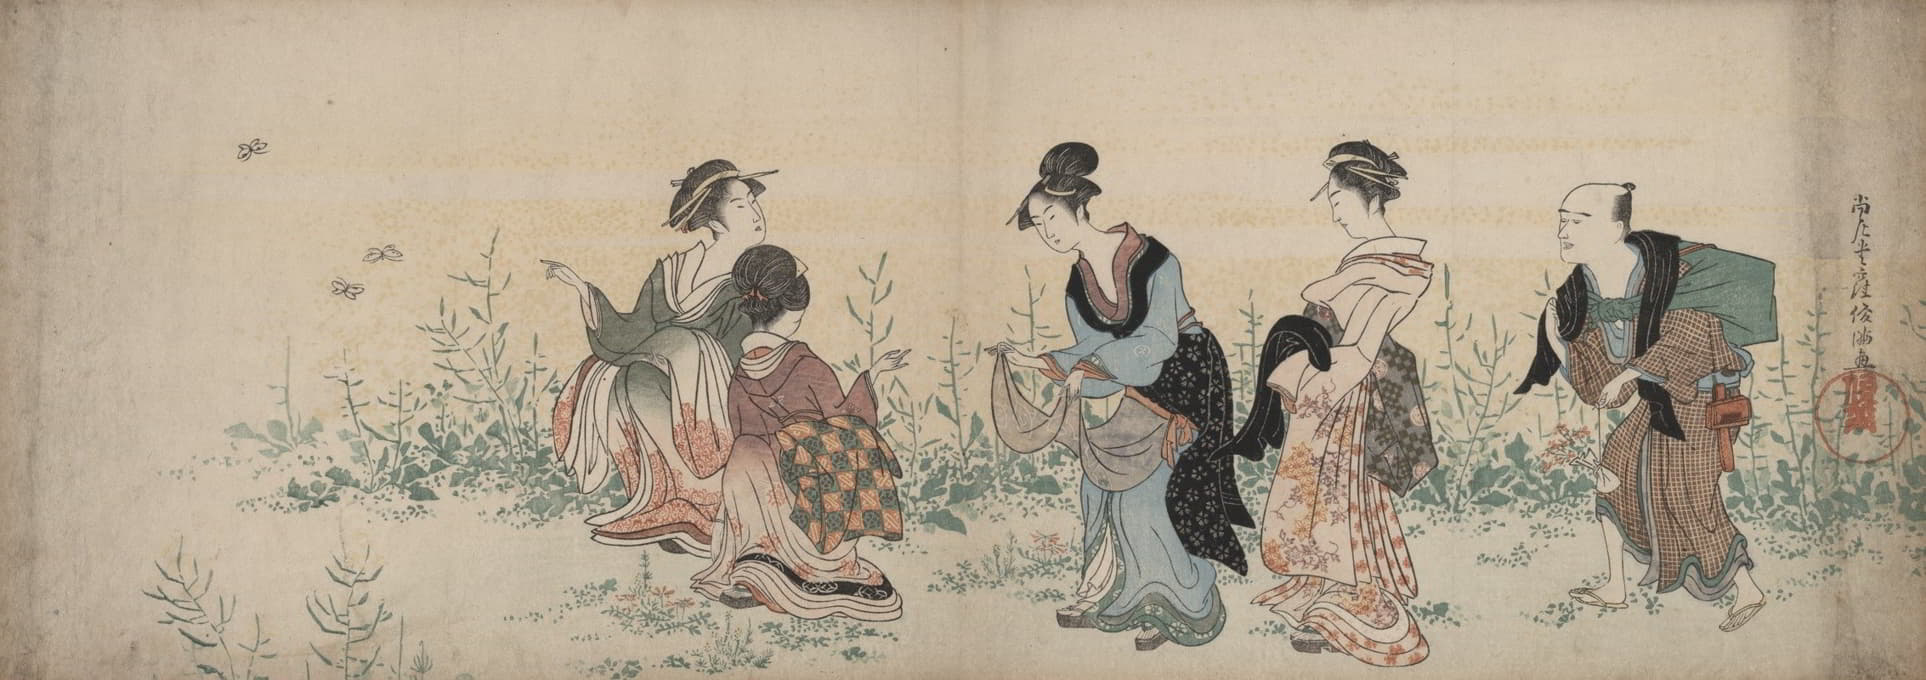 四个女孩和一个仆人在欣赏野花和蝴蝶